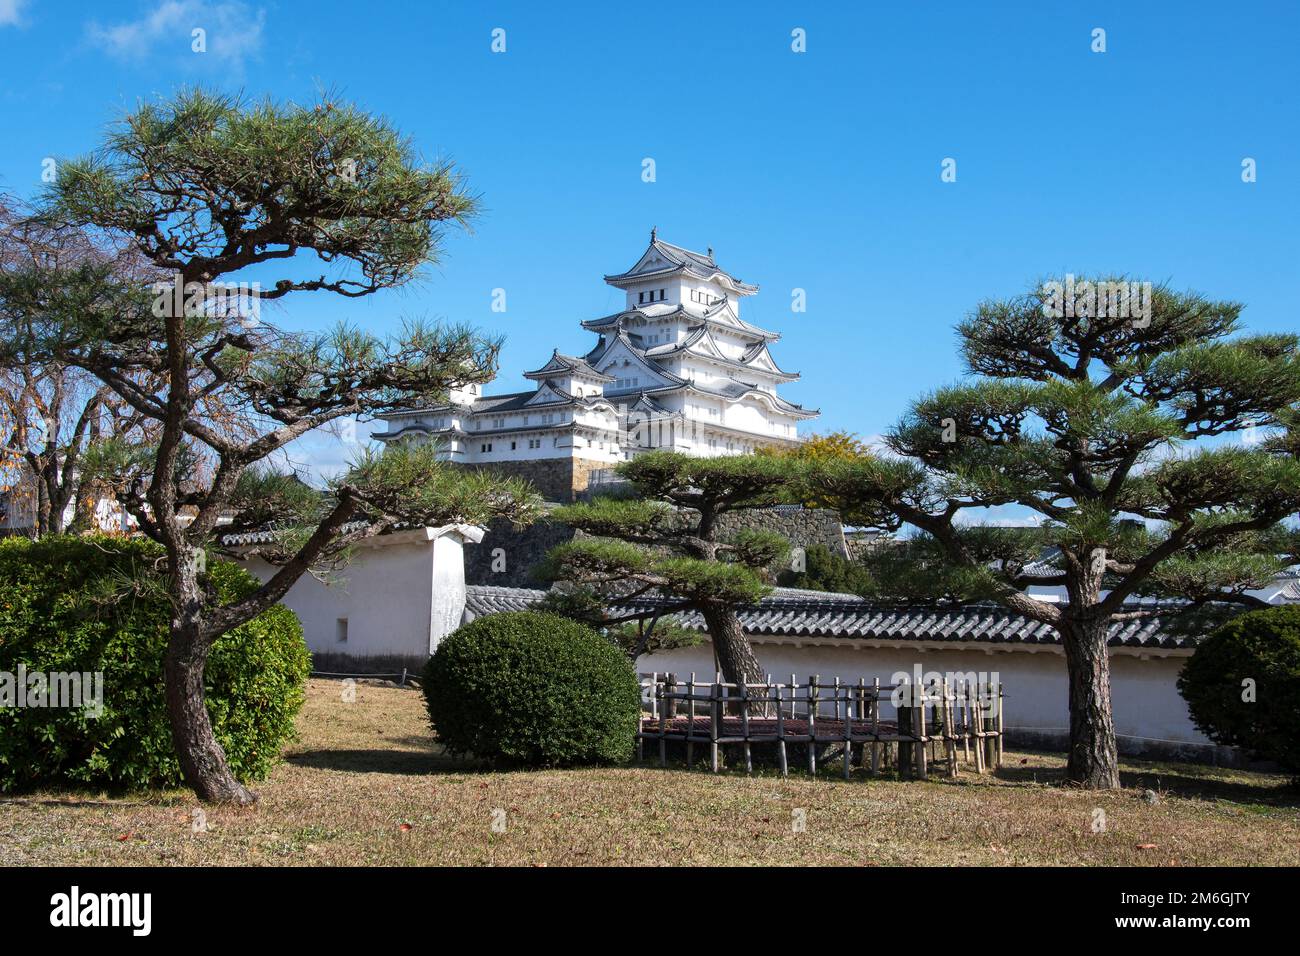 Vista panoramica della torre principale del Castello di Himeji sulla collina Foto Stock